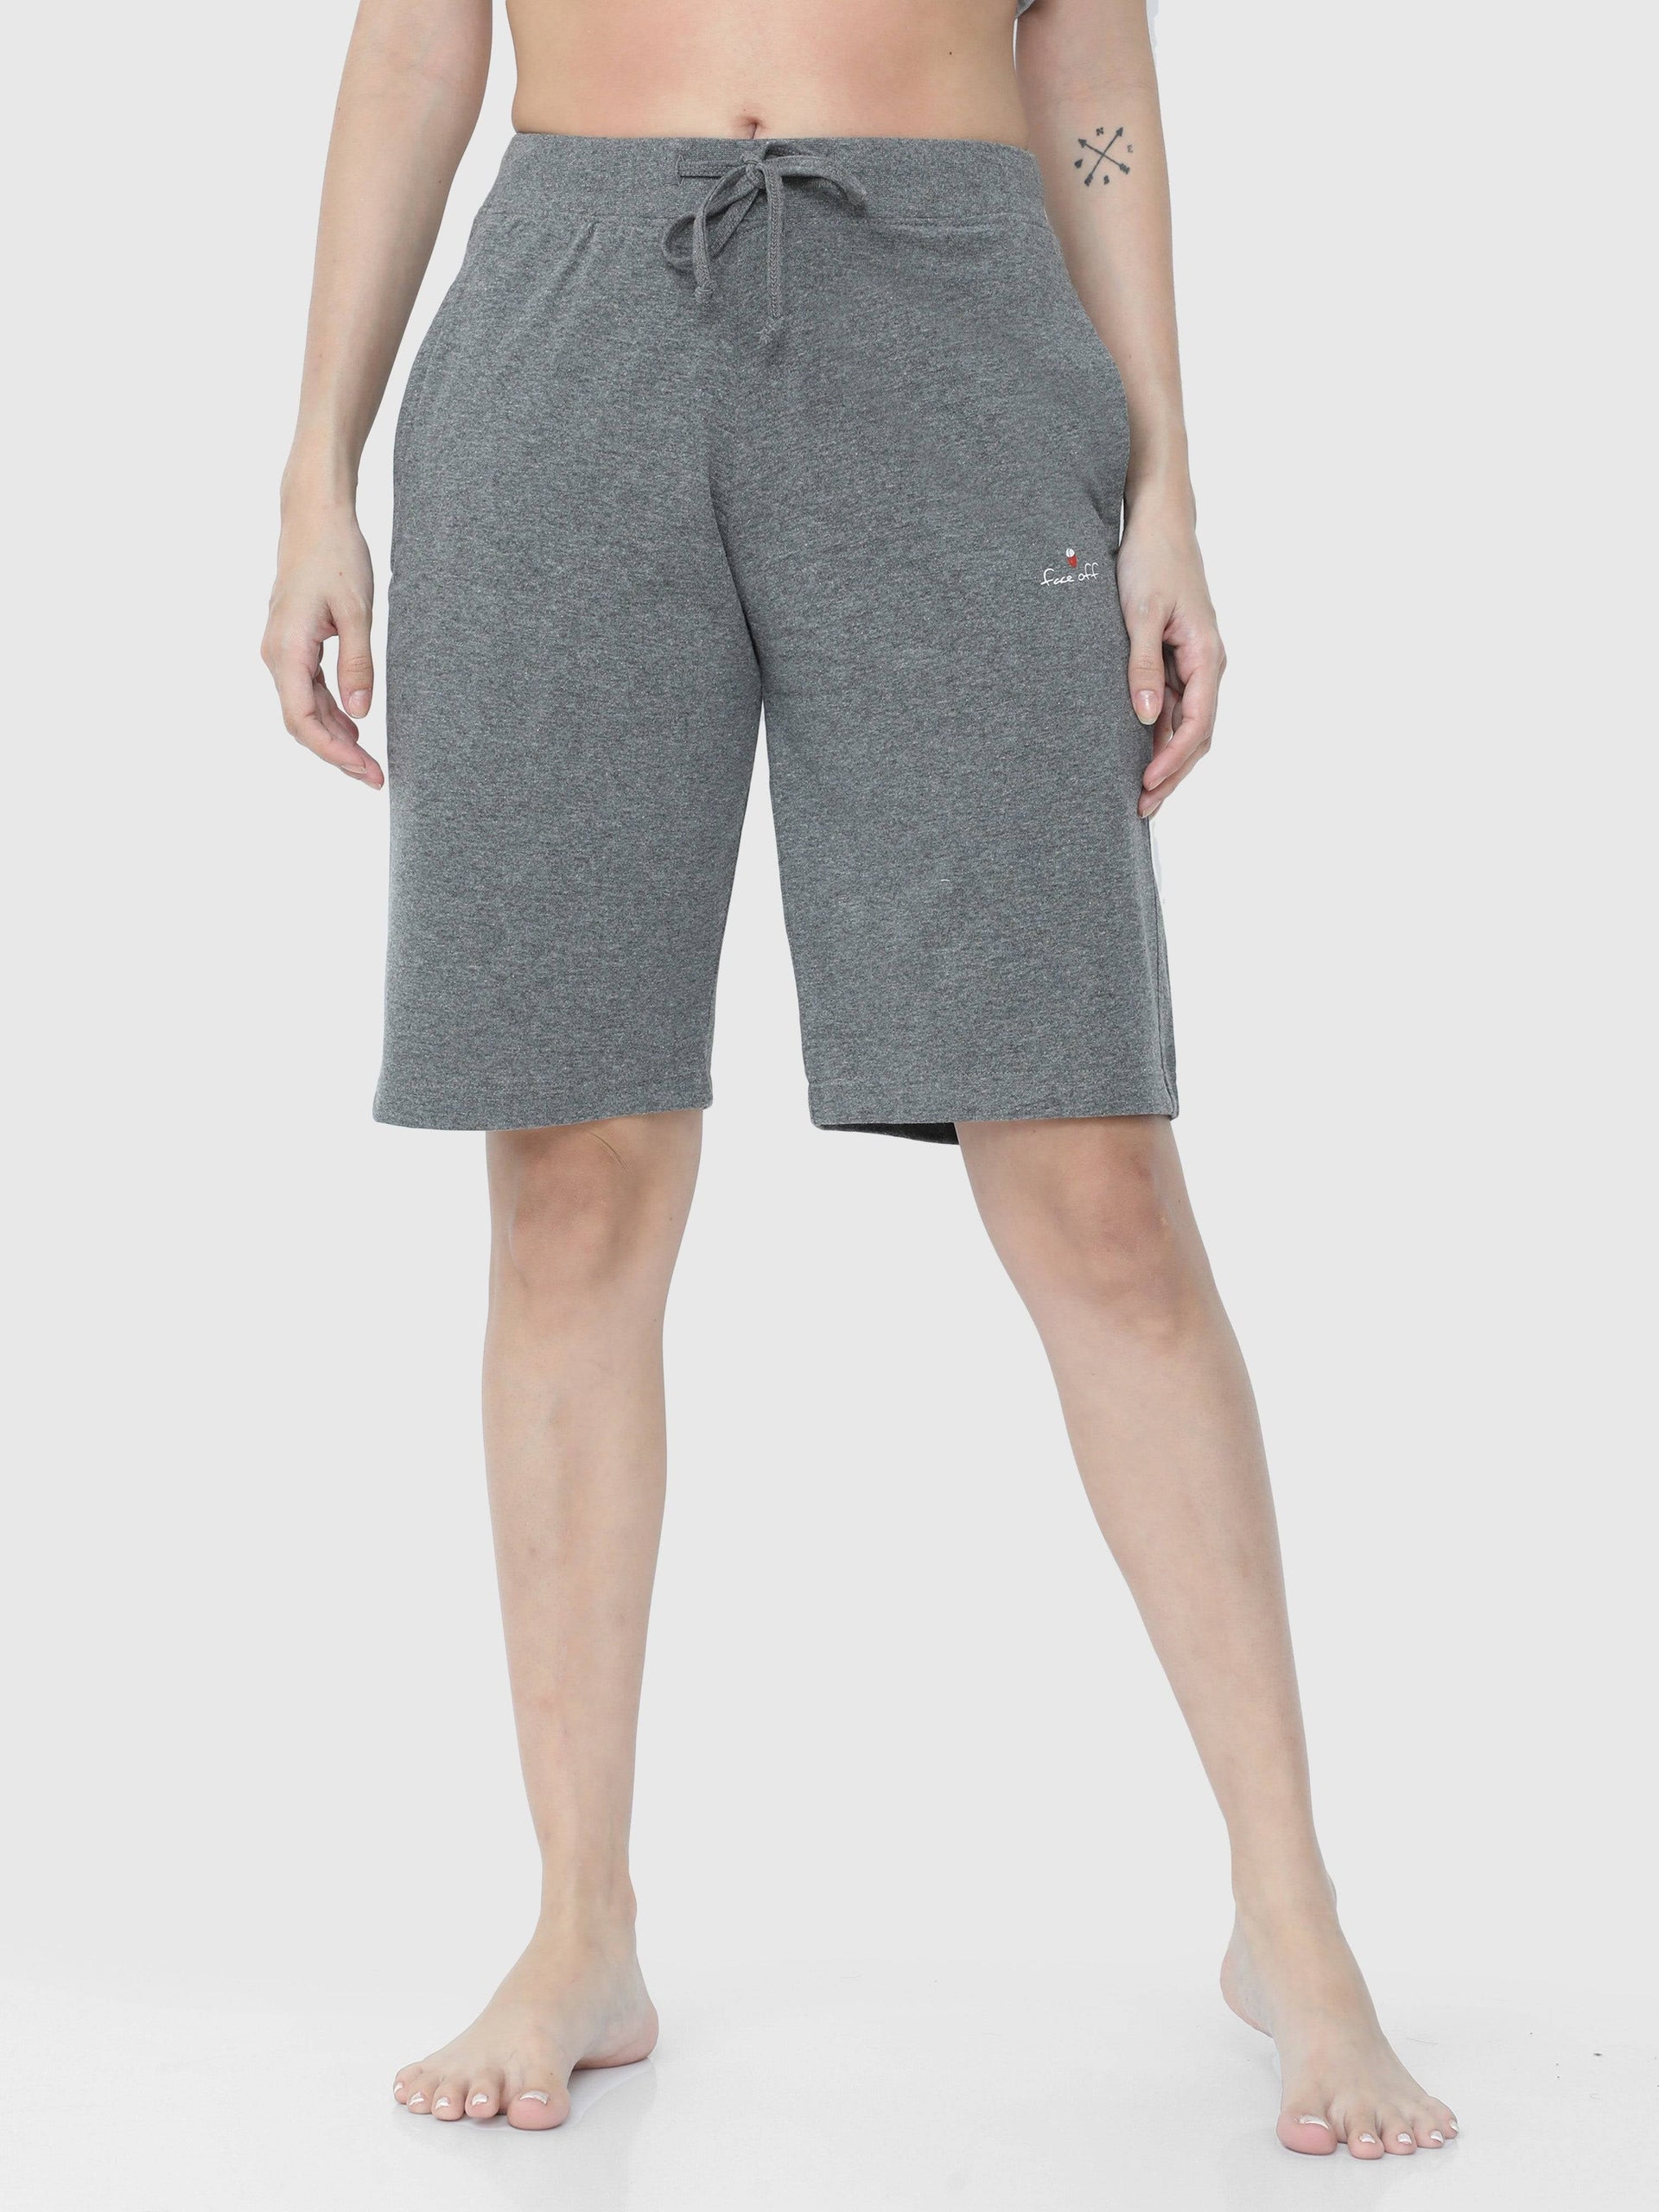 Buy Womens Shorts At